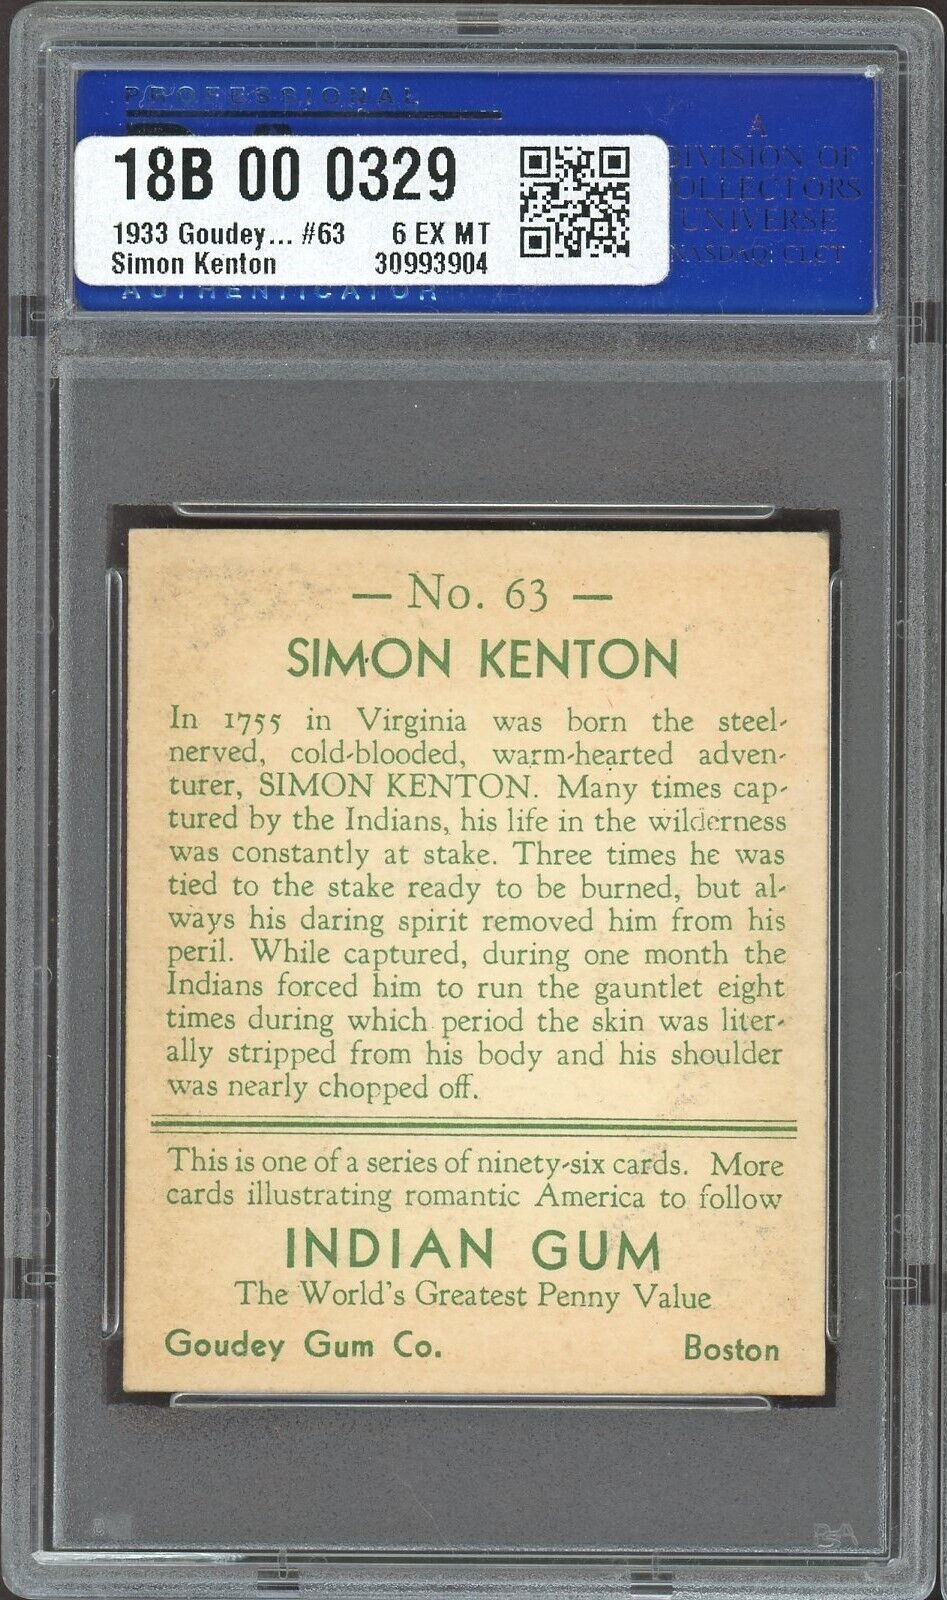 1933 Goudey Indian Gum (Series of 96) #63 Simon Kenton (PSA 6 EX/MT)